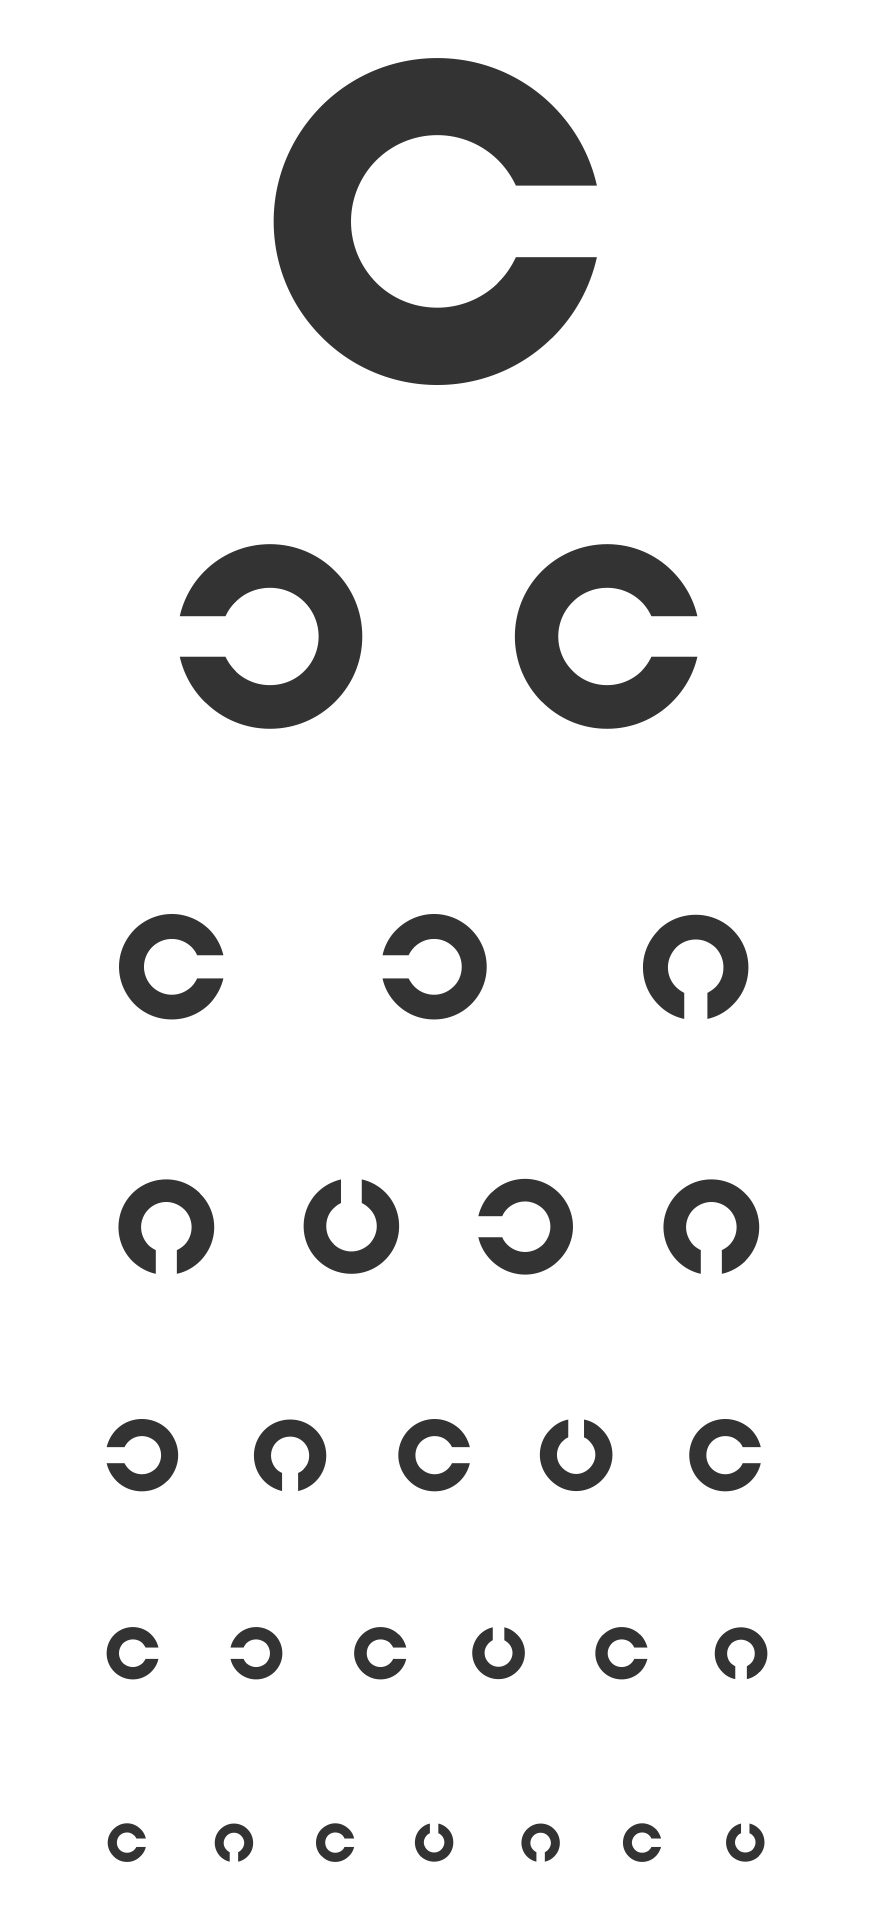 10 Best Free Printable Preschool Eye Charts - printablee.com